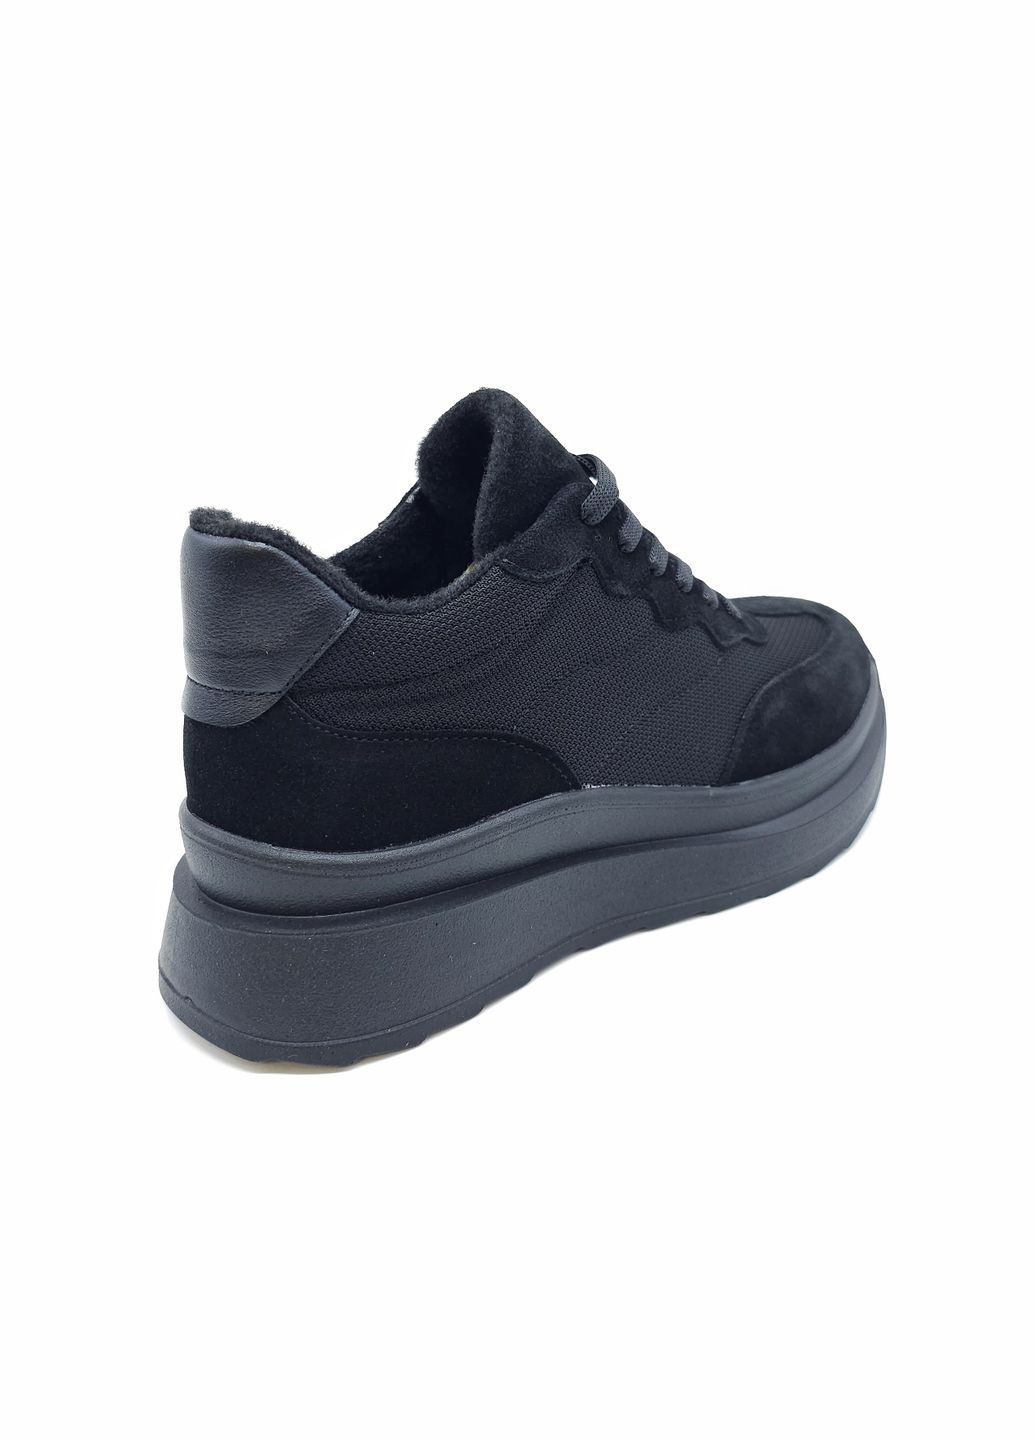 Черные всесезонные женские кроссовки черные кожаные mr-12-5 23,5 см (р) Morento